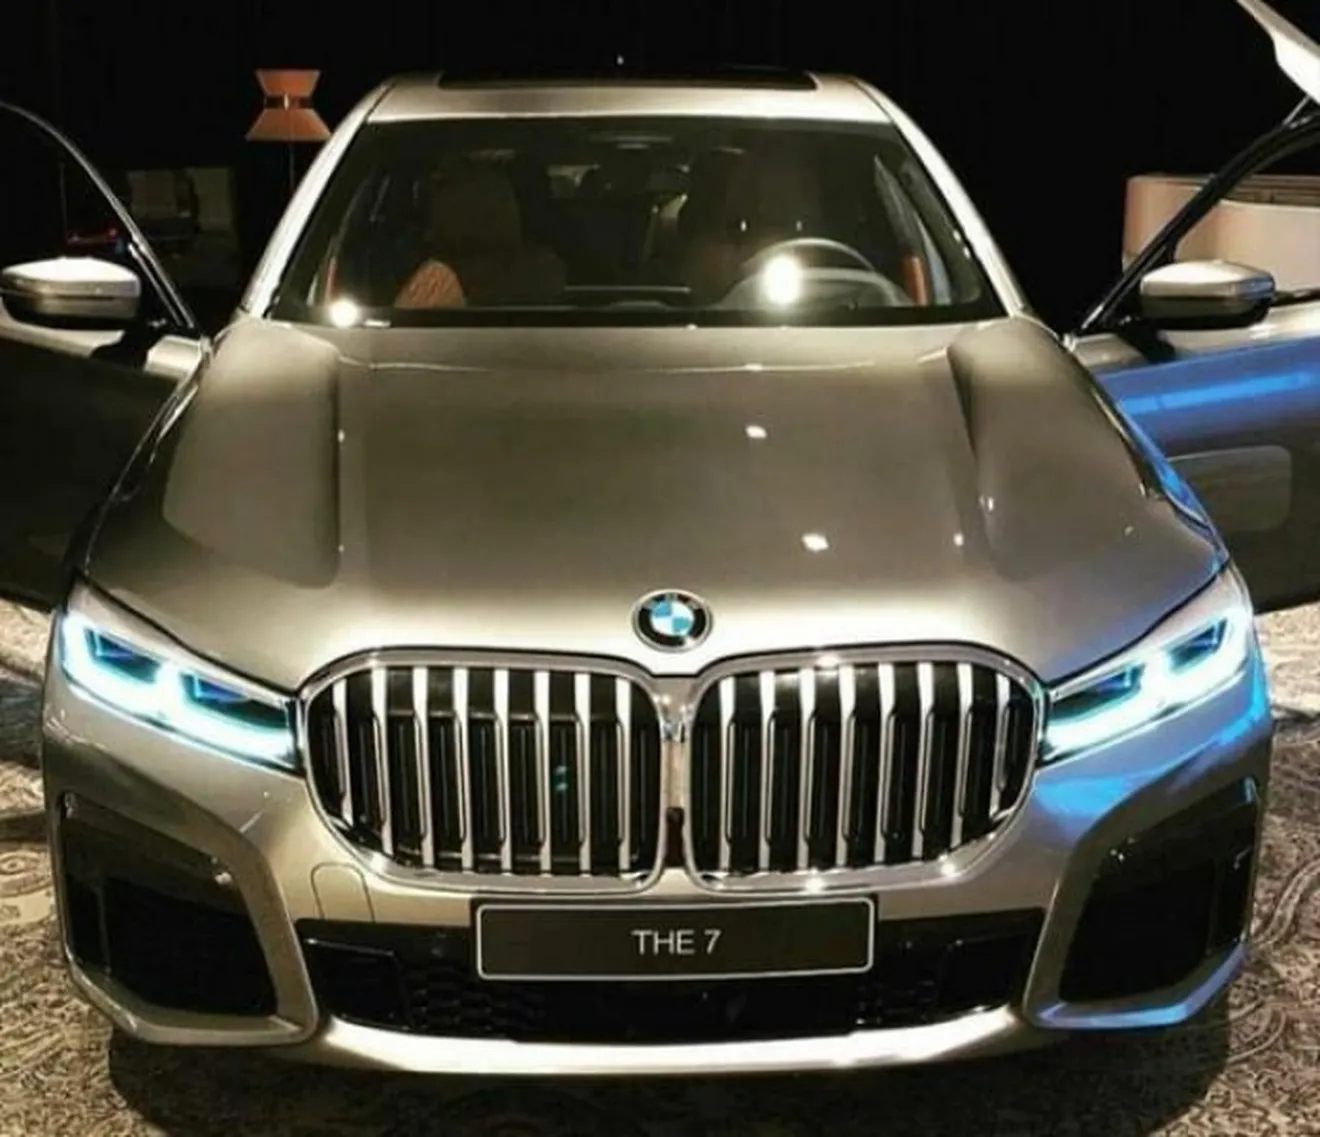 Filtrado el frontal del renovado BMW Serie 7 2020